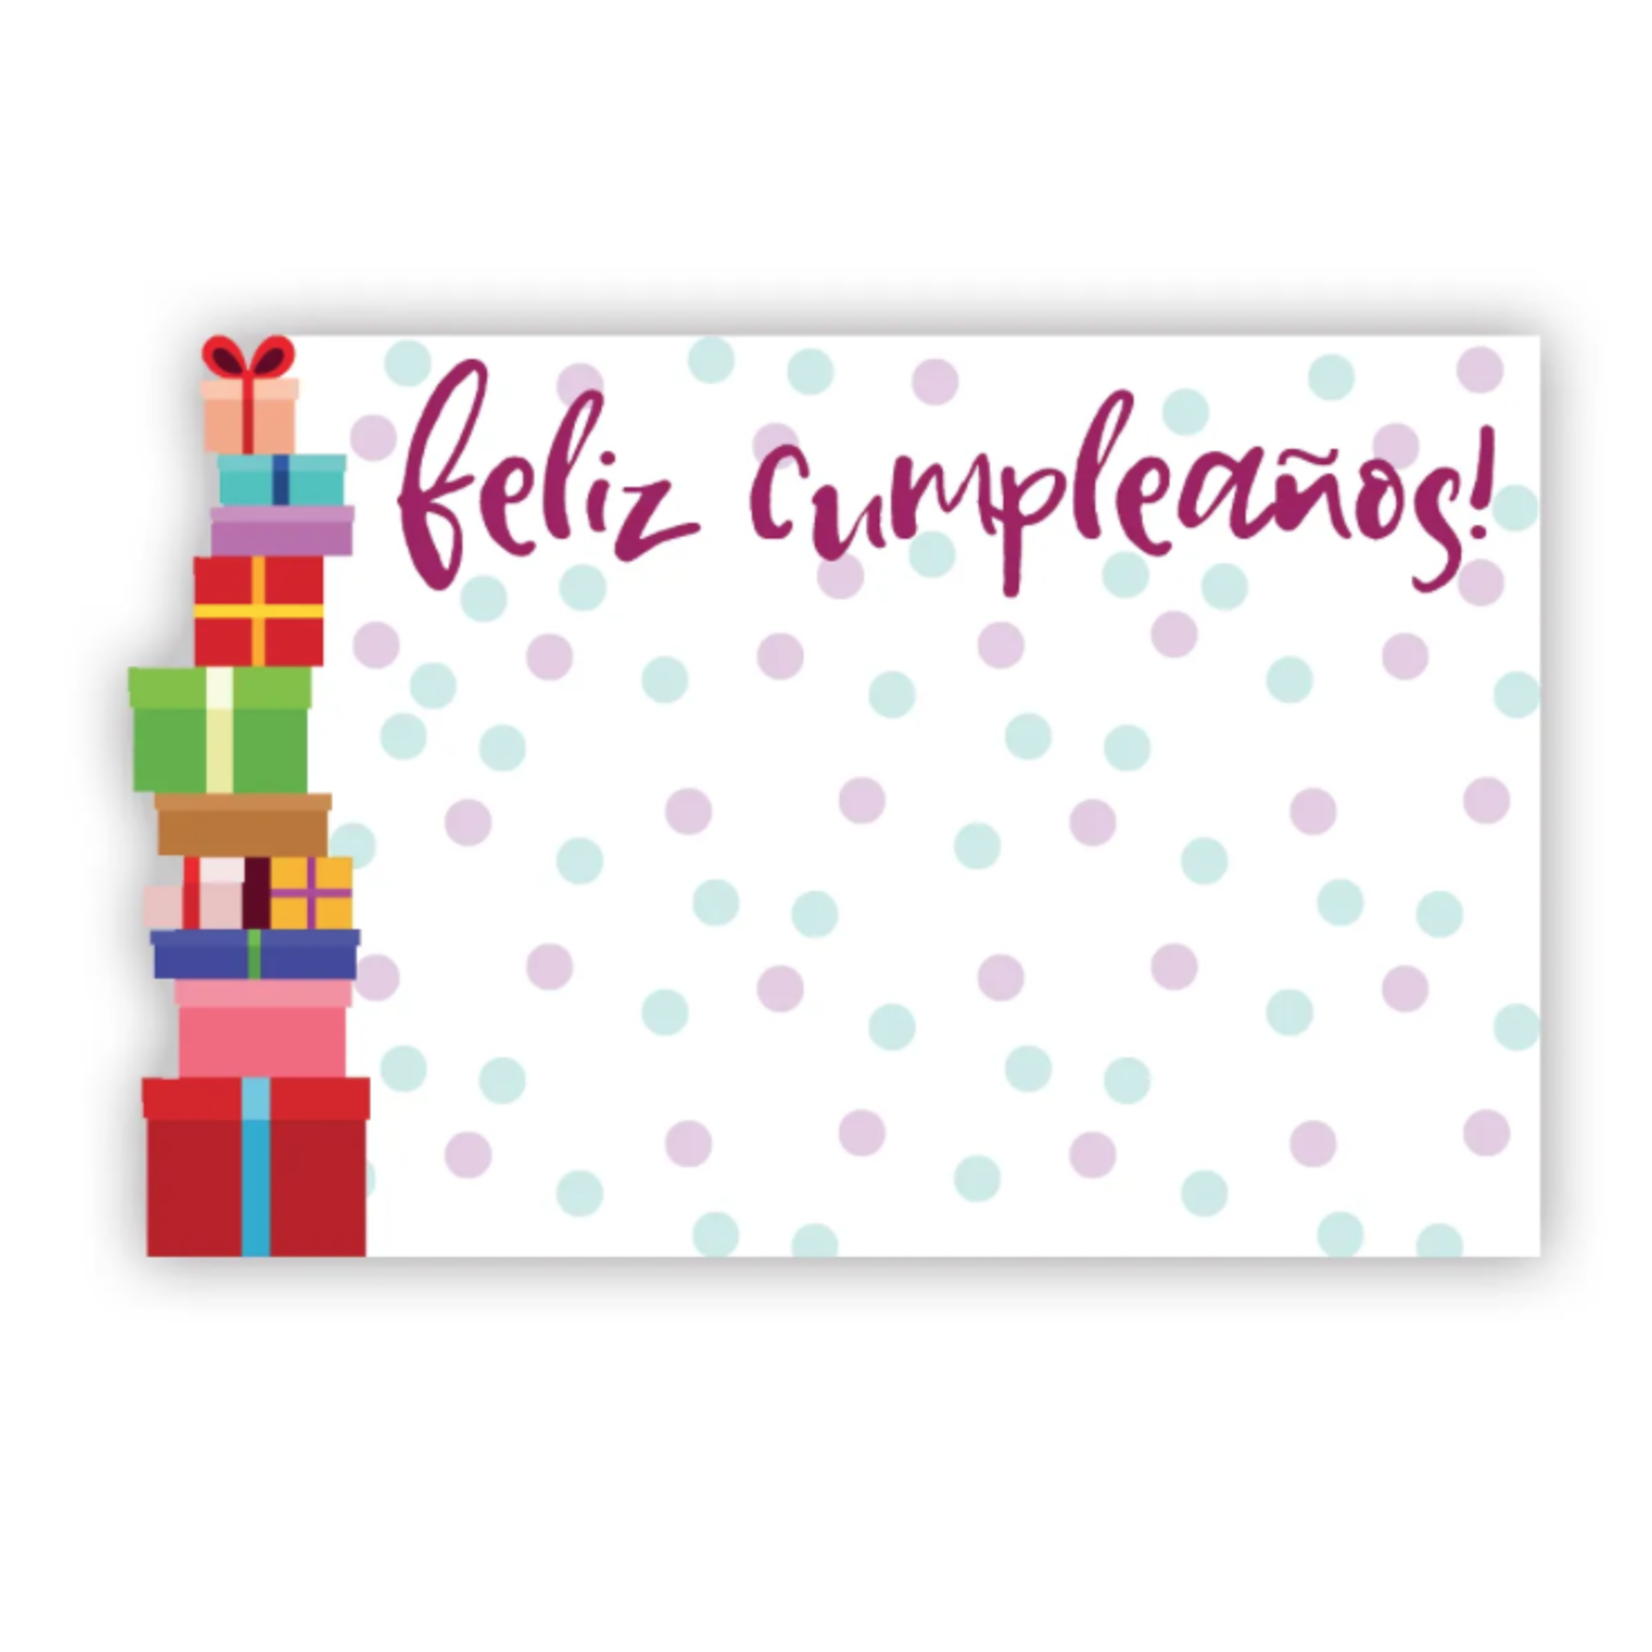 "Feliz Cumpleanos" : Stack of gifts